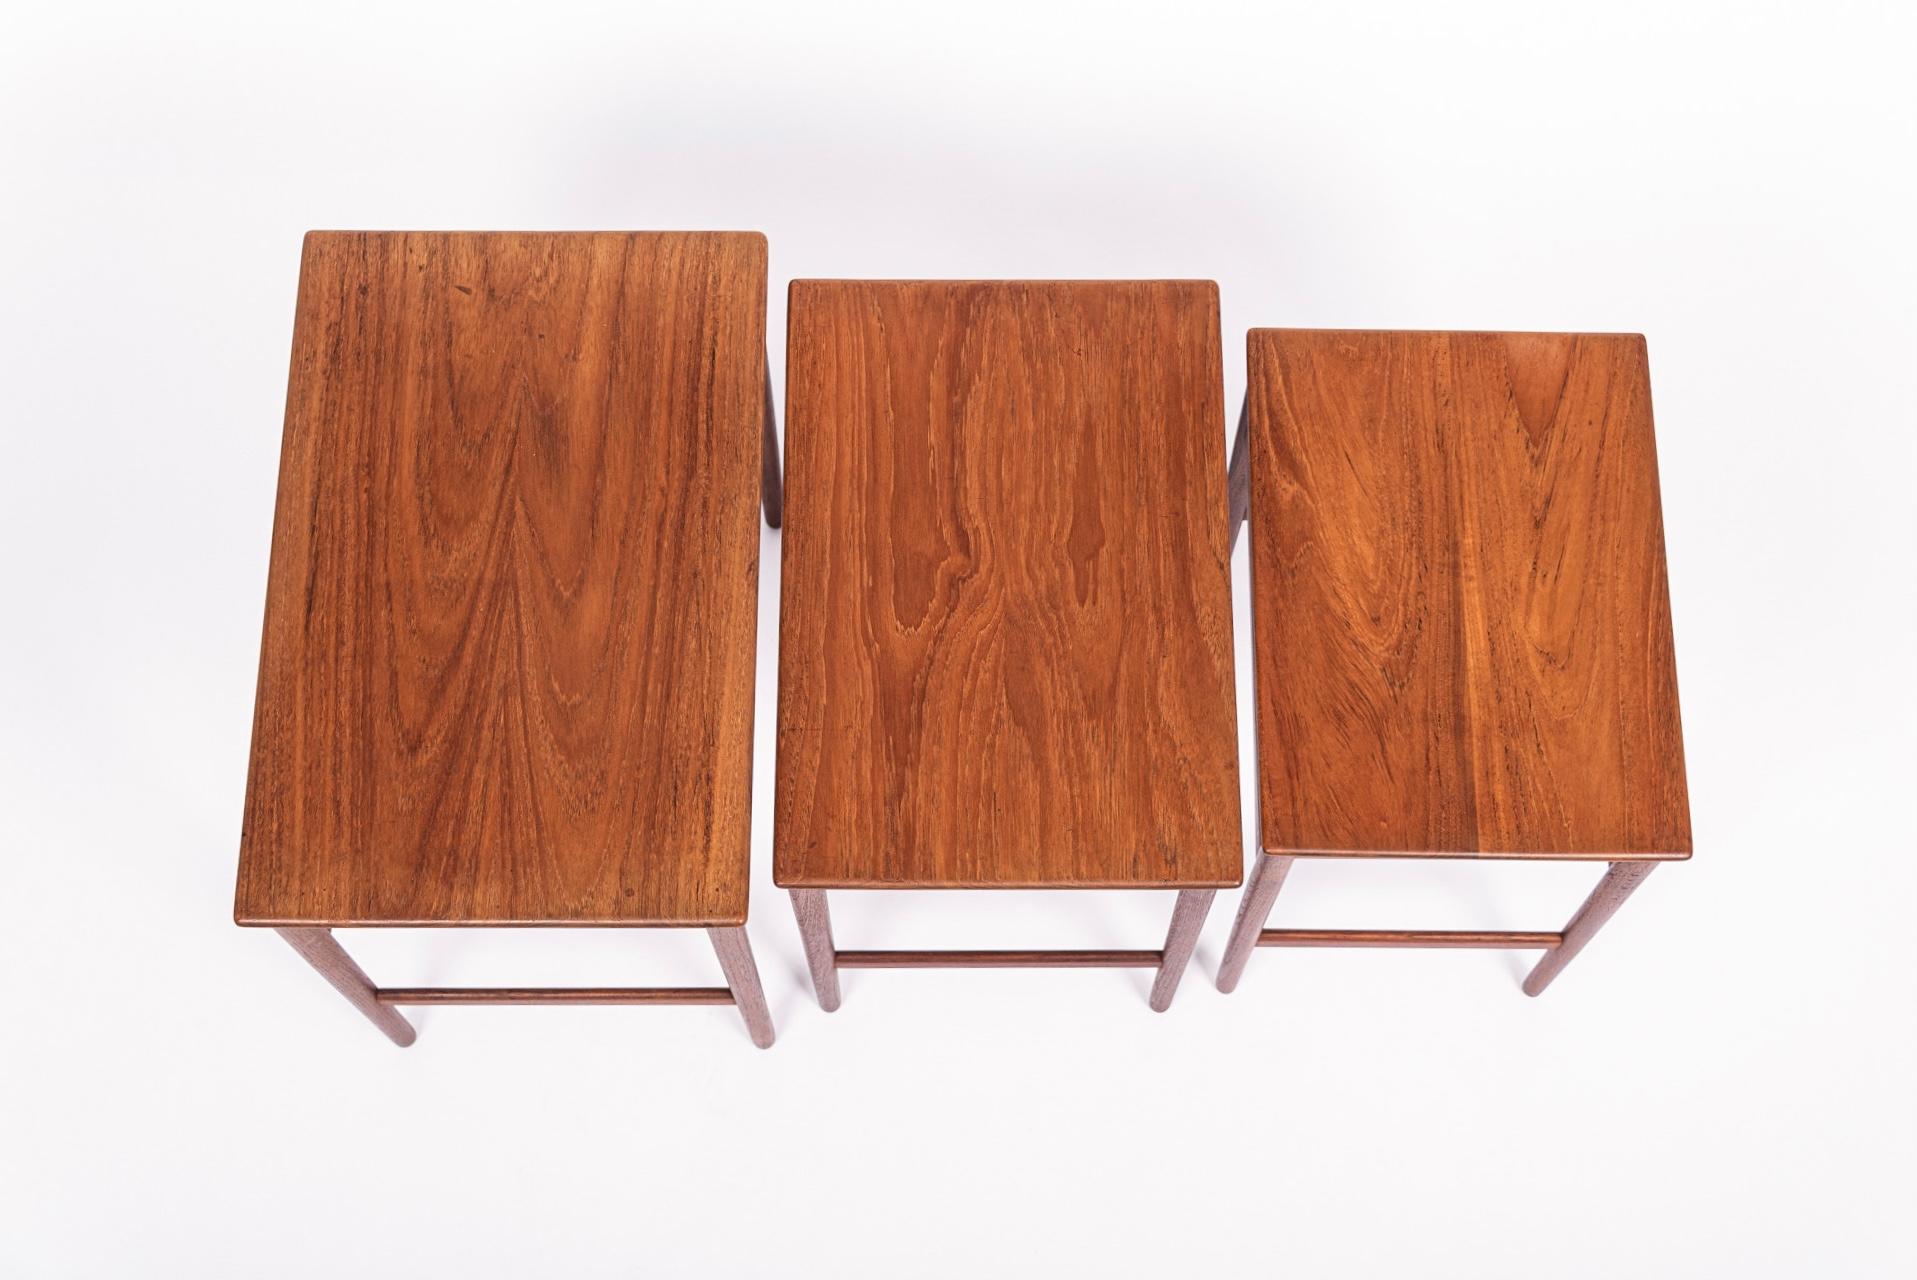 Danish Modern Teak Nesting Side Tables by Hans J. Wegner, 1960s For Sale 3